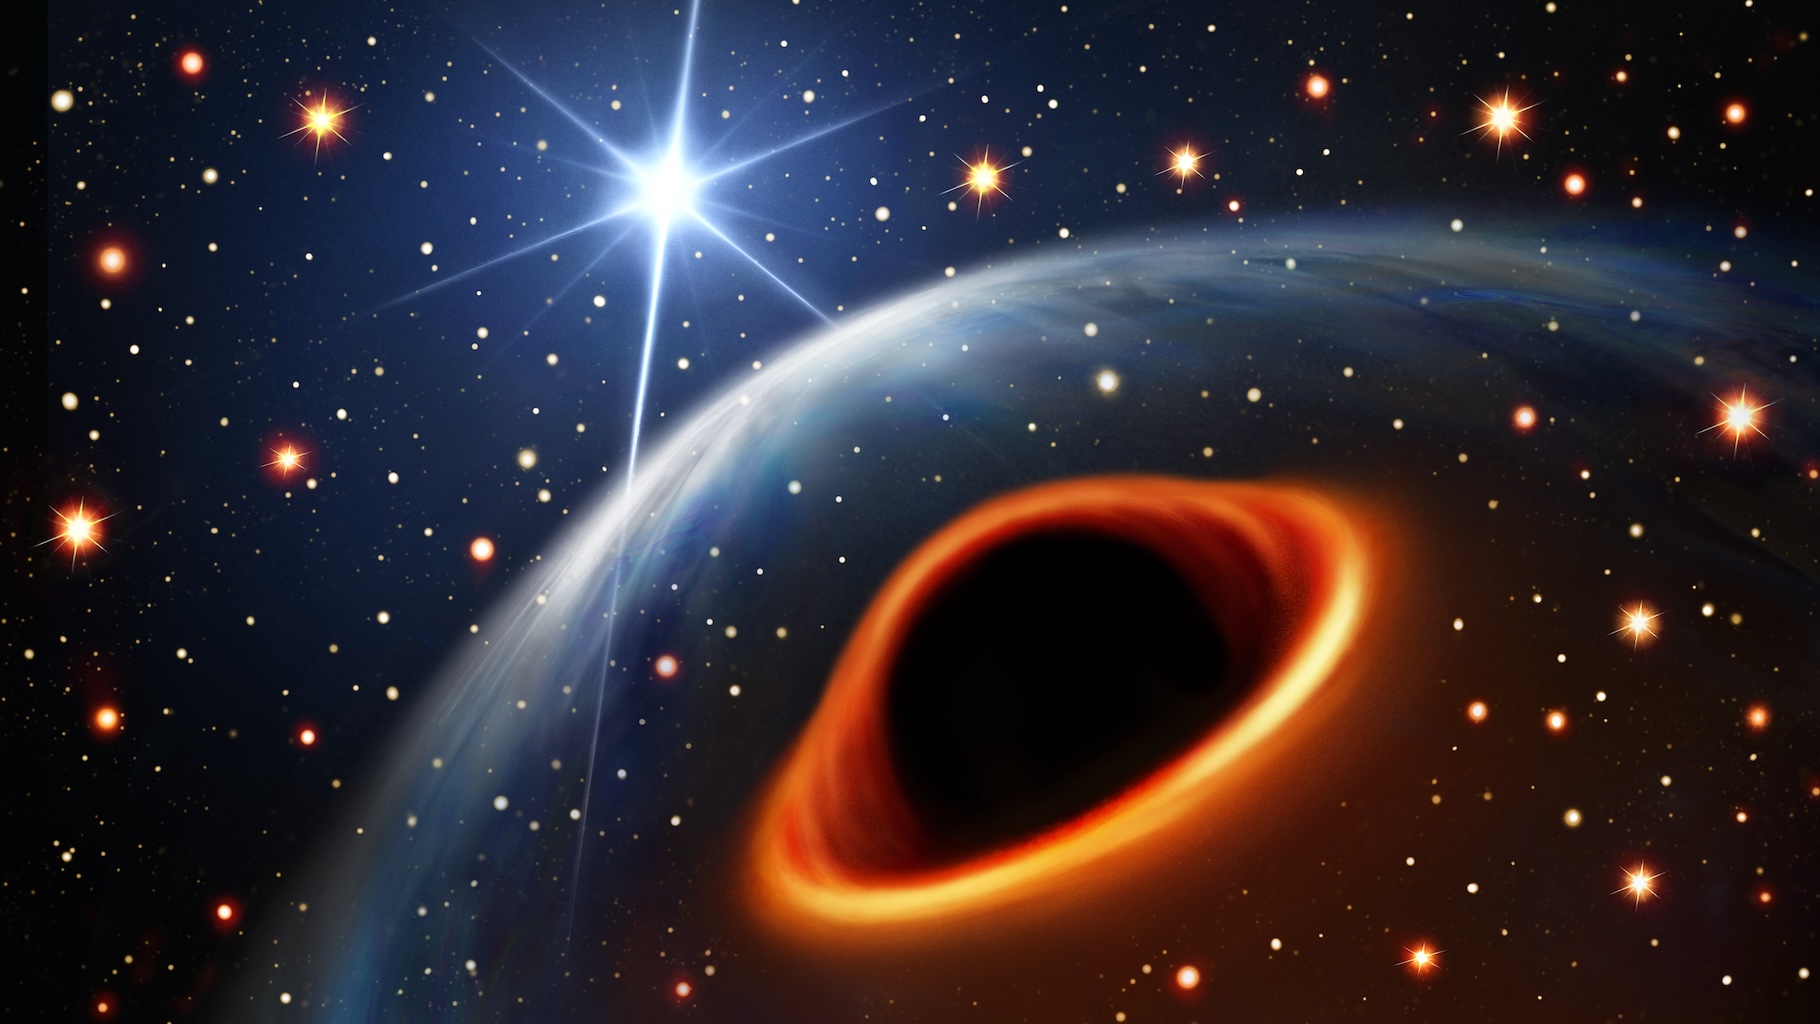 Étoile à neutrons ou trou noir comme sur cette vue d’artiste ? Quelle est donc la nature du mystérieux compagnon du pulsar découvert par des chercheurs au cœur de l’amas NGC 1851 ? © ginstudio, Adobe Stock